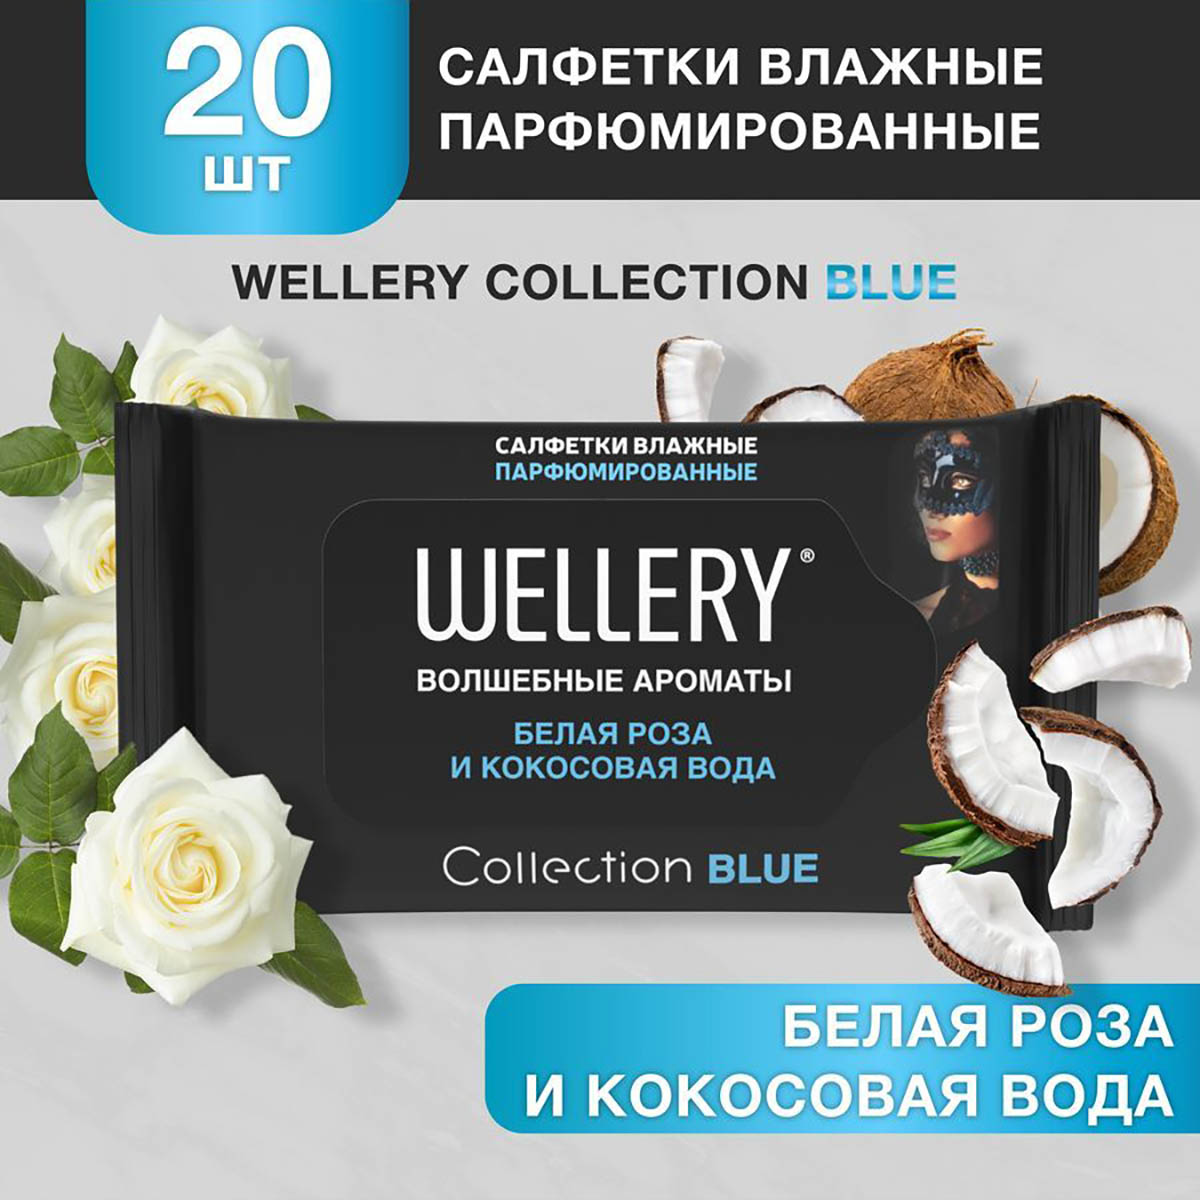 Салфетки влажные Wellery Collection Blue универсальные, белая роза, кокосовая вода 20 шт шток роза белая